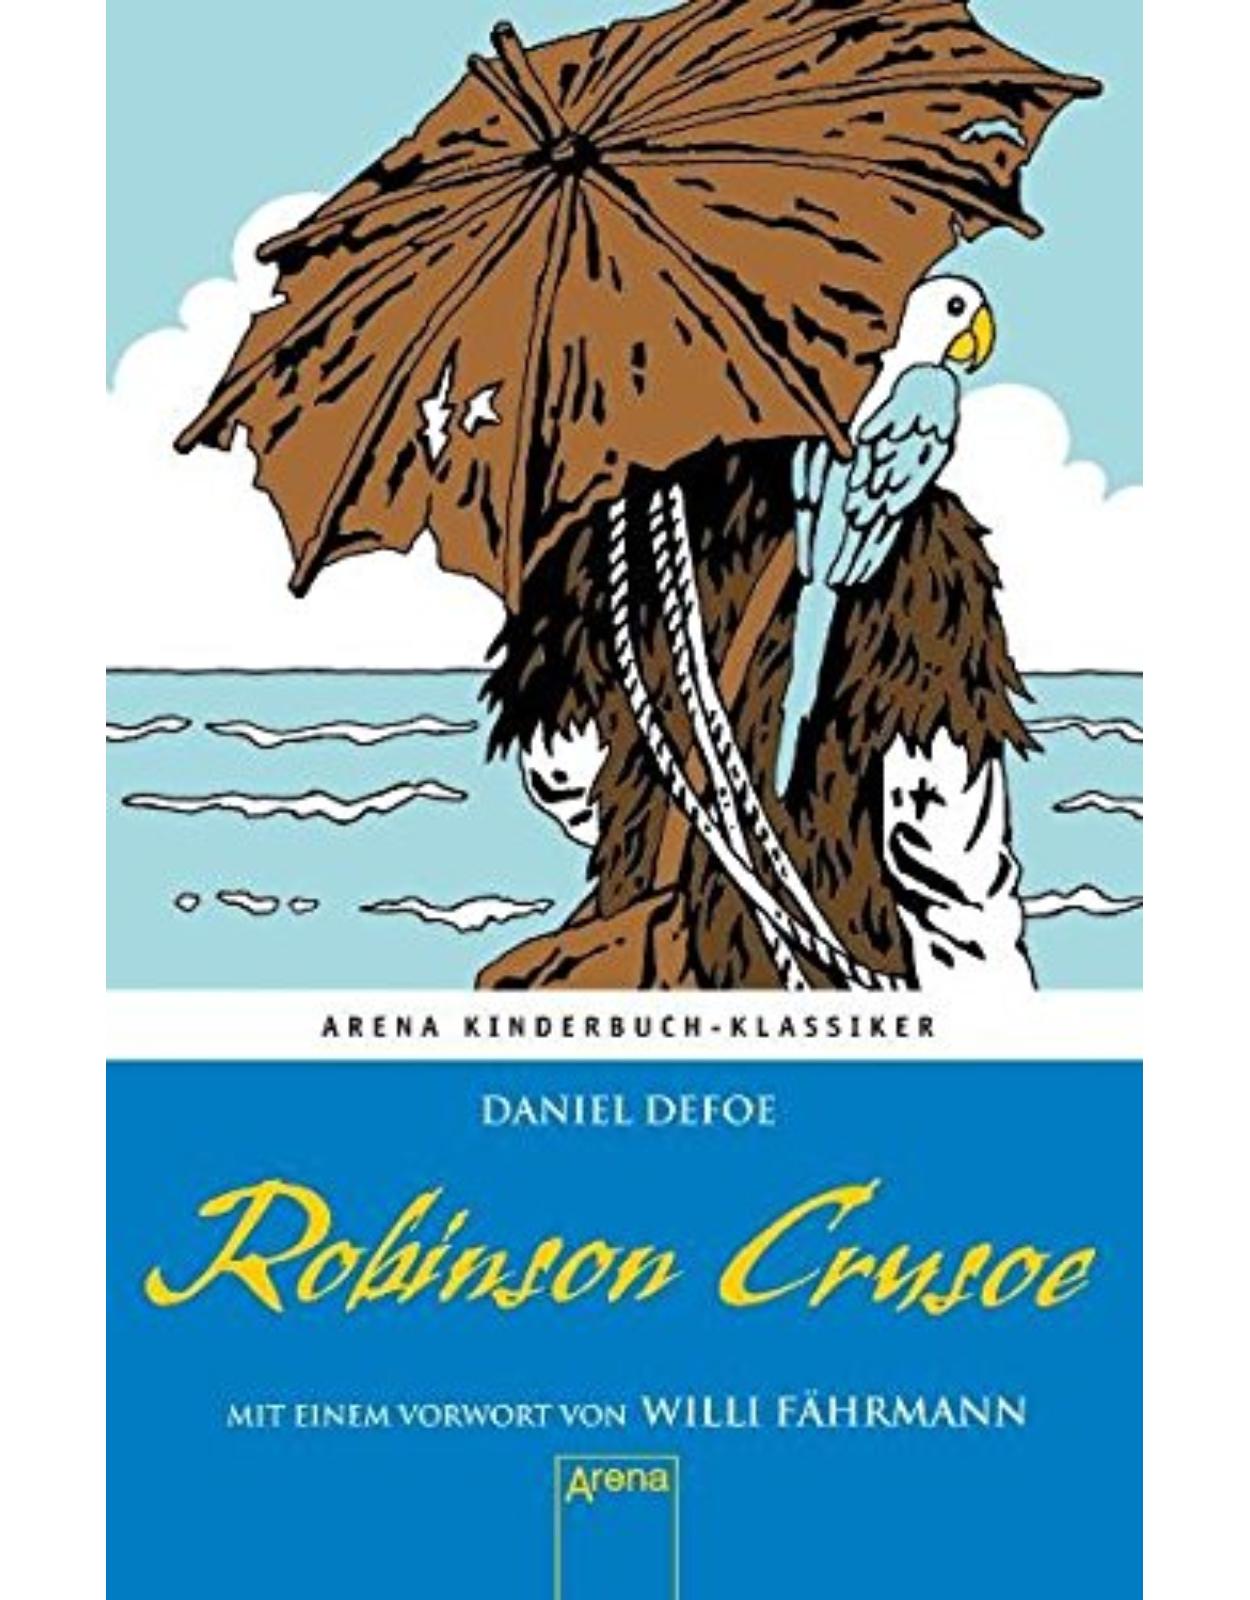 Robinson Crusoe. Mit einem Vorwort von Willi Fährmann: Arena Kinderbuch-Klassiker